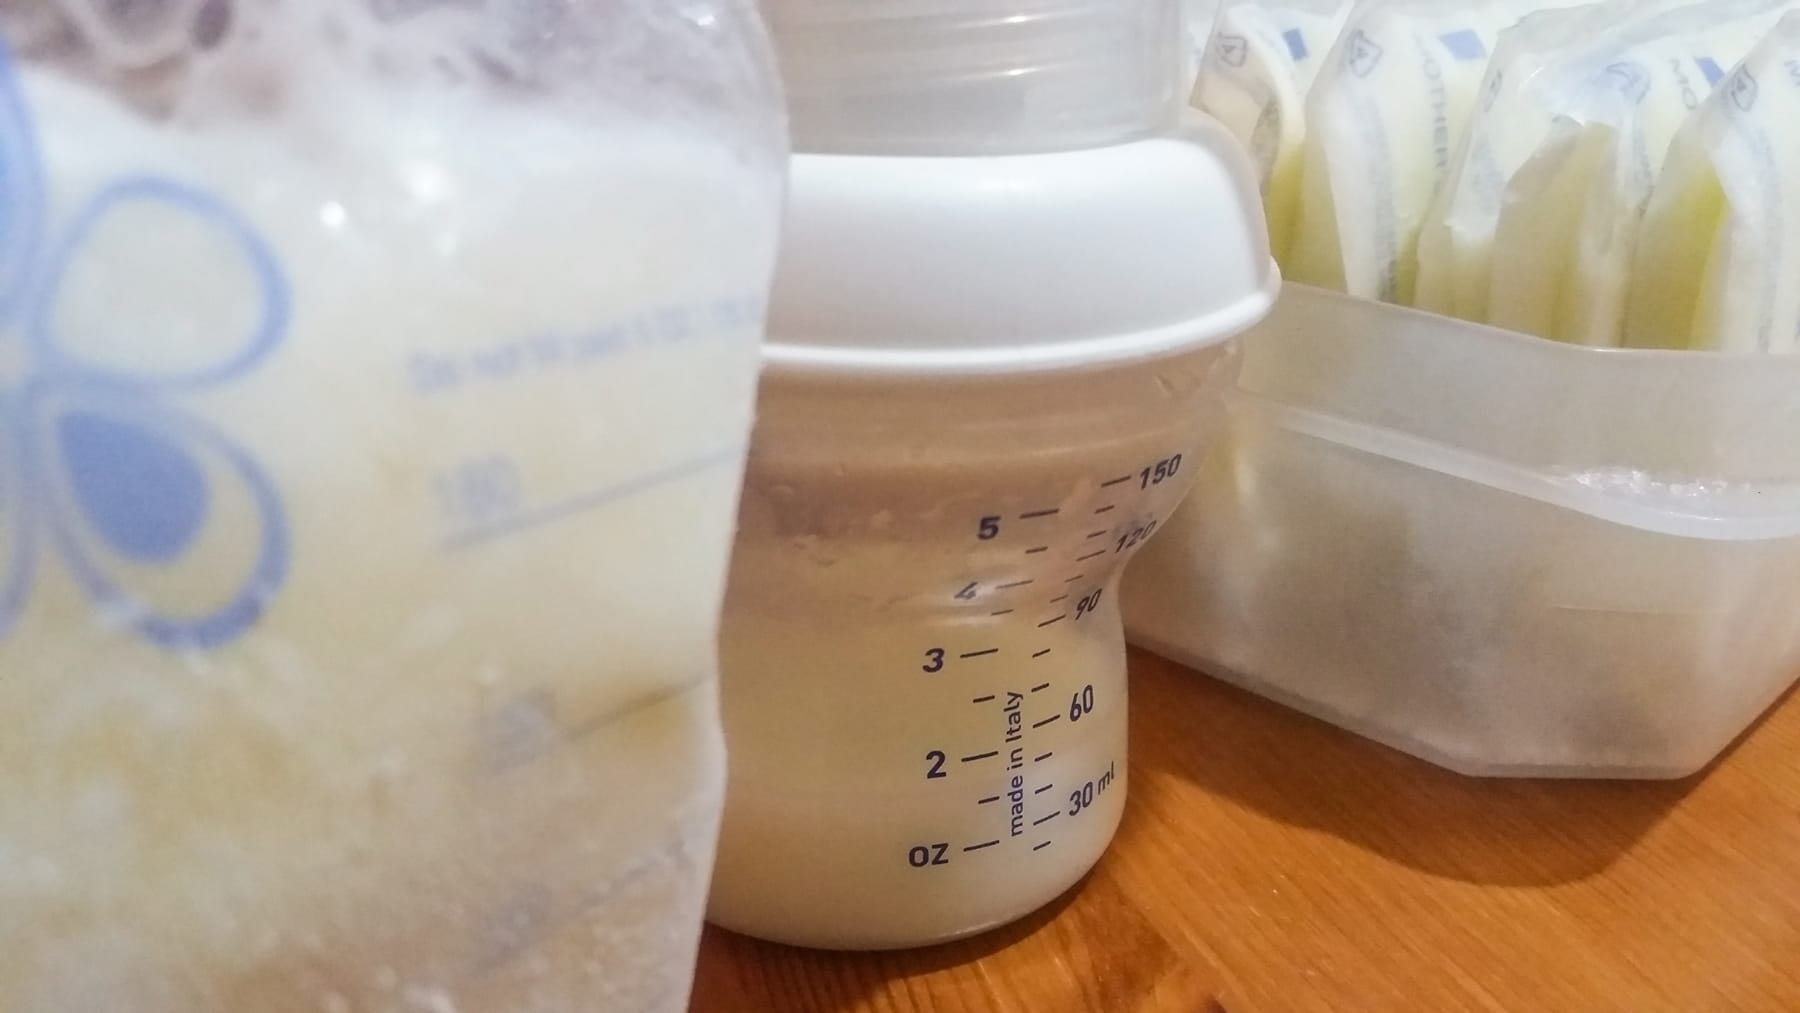 Leftover Breast Milk in Bottle